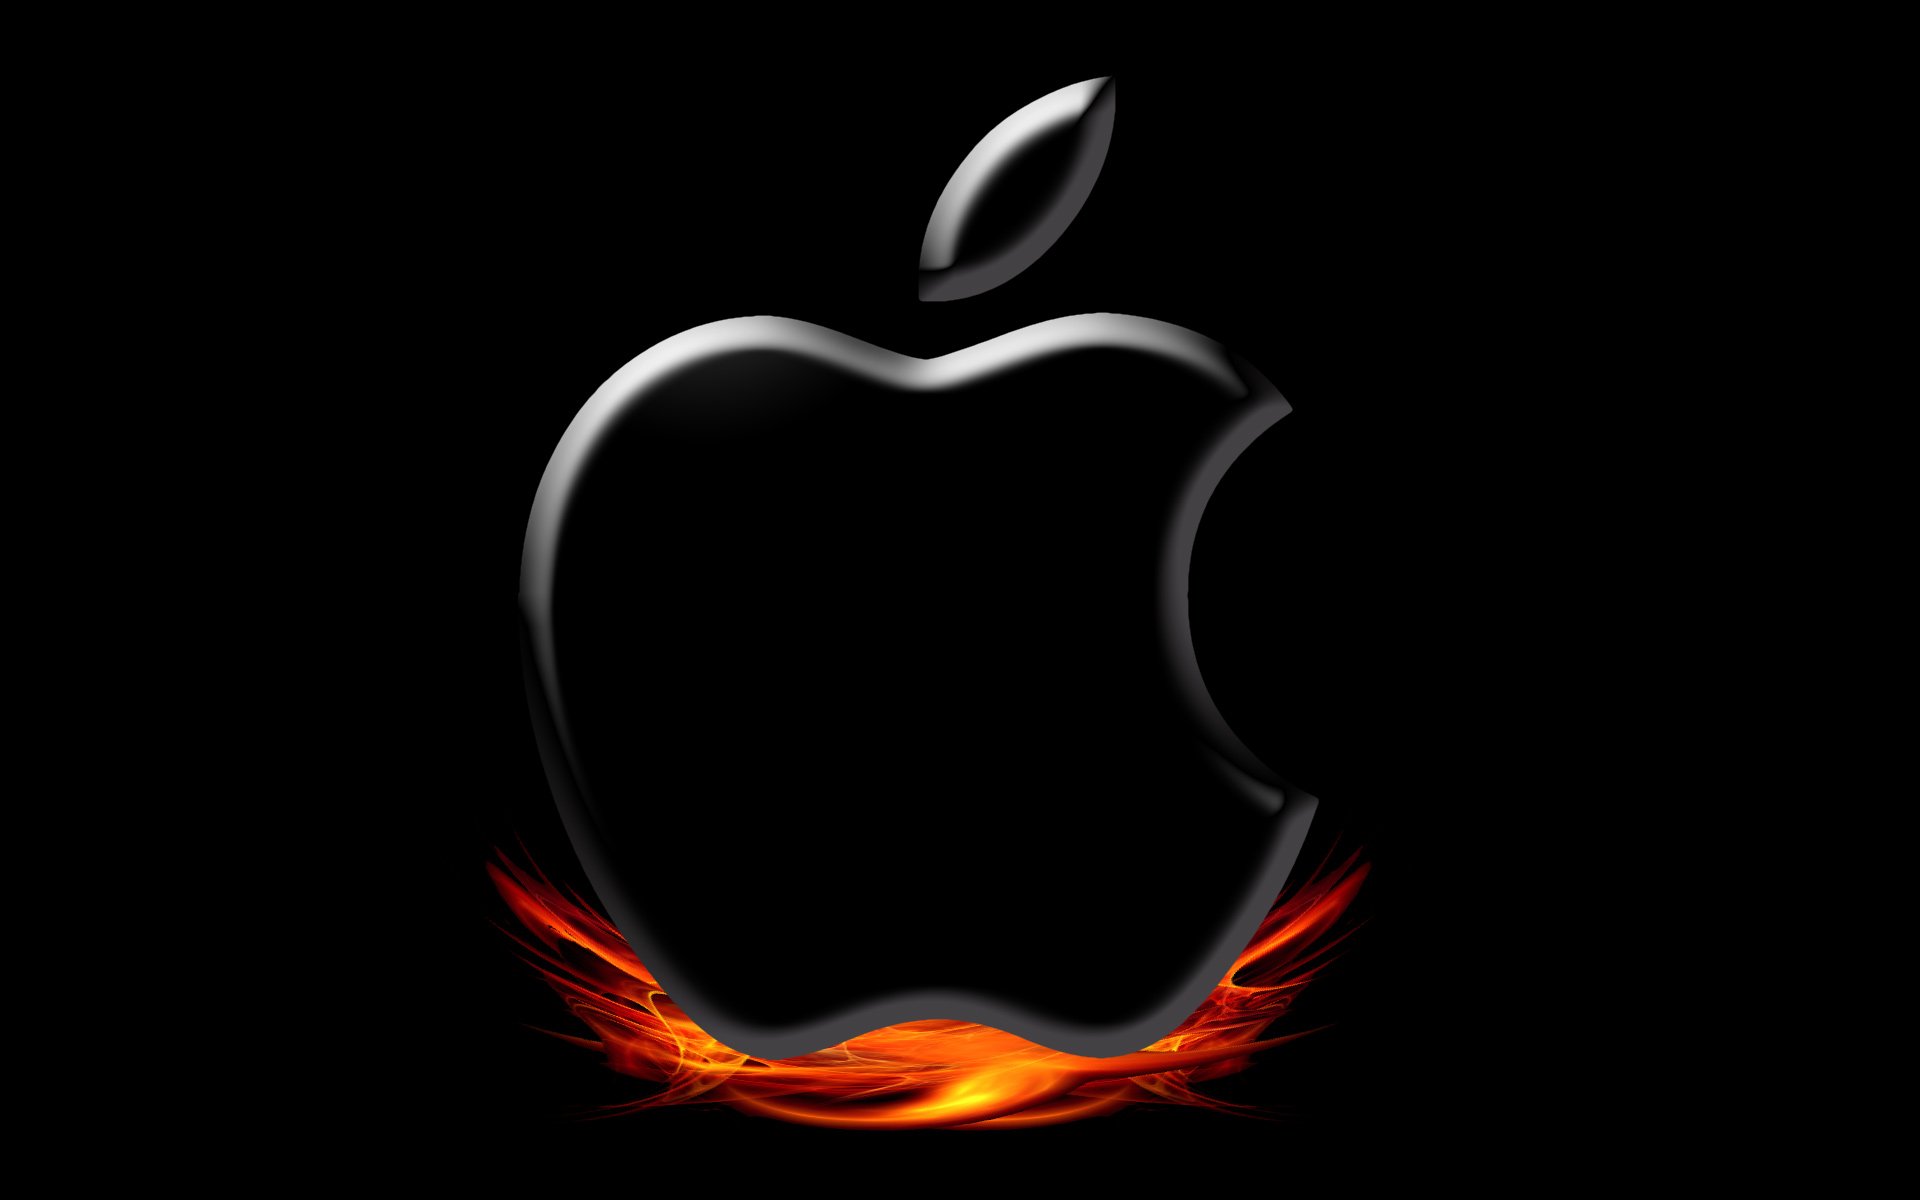 apple fire wallpaper apple fire Iphone wallpaper apple fire Mobile